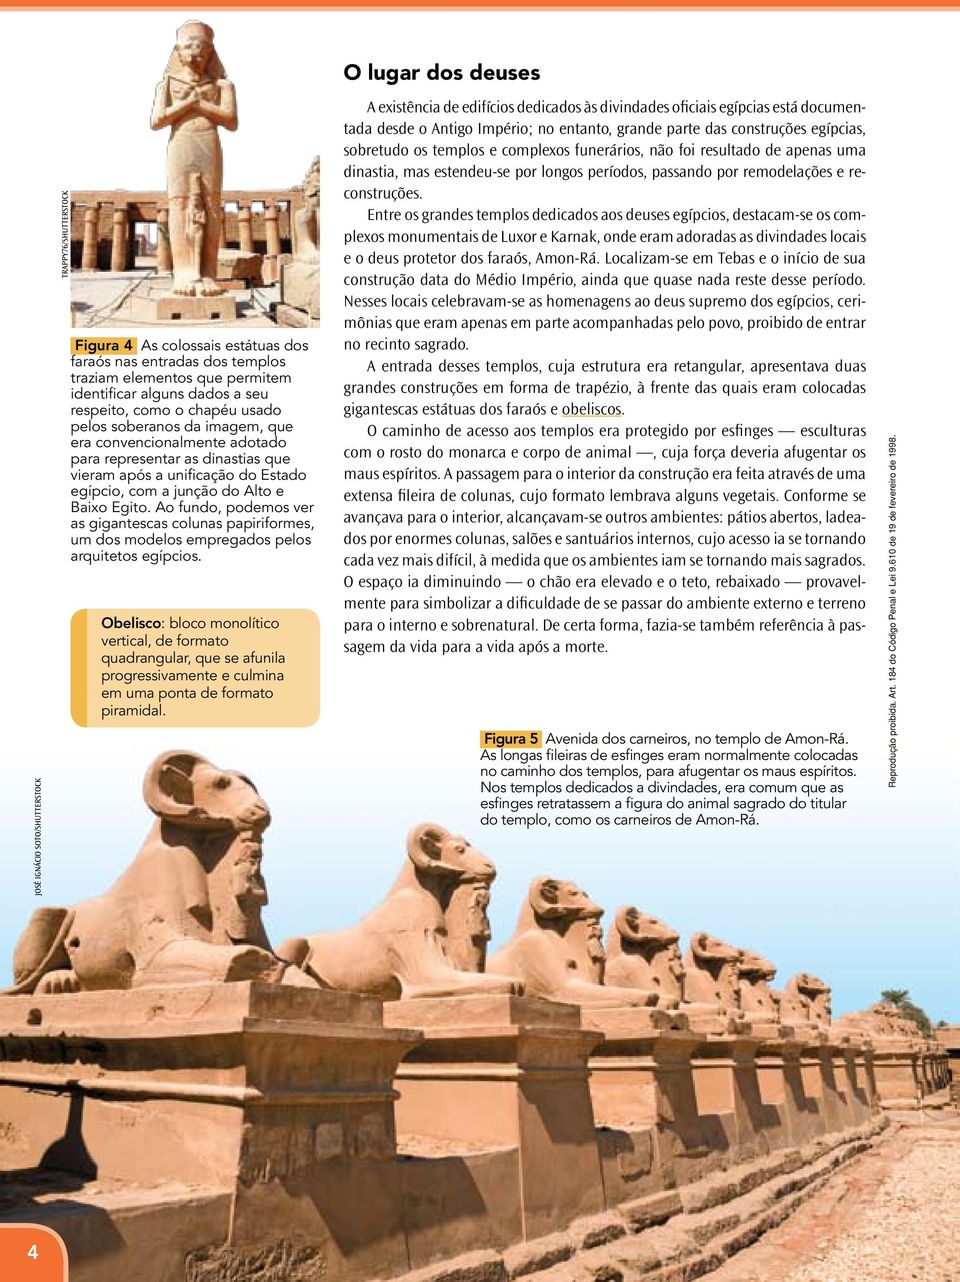 Baixo Egito. Ao fundo, podemos ver as gigantescas colunas papiriformes, um dos modelos empregados pelos arquitetos egípcios.